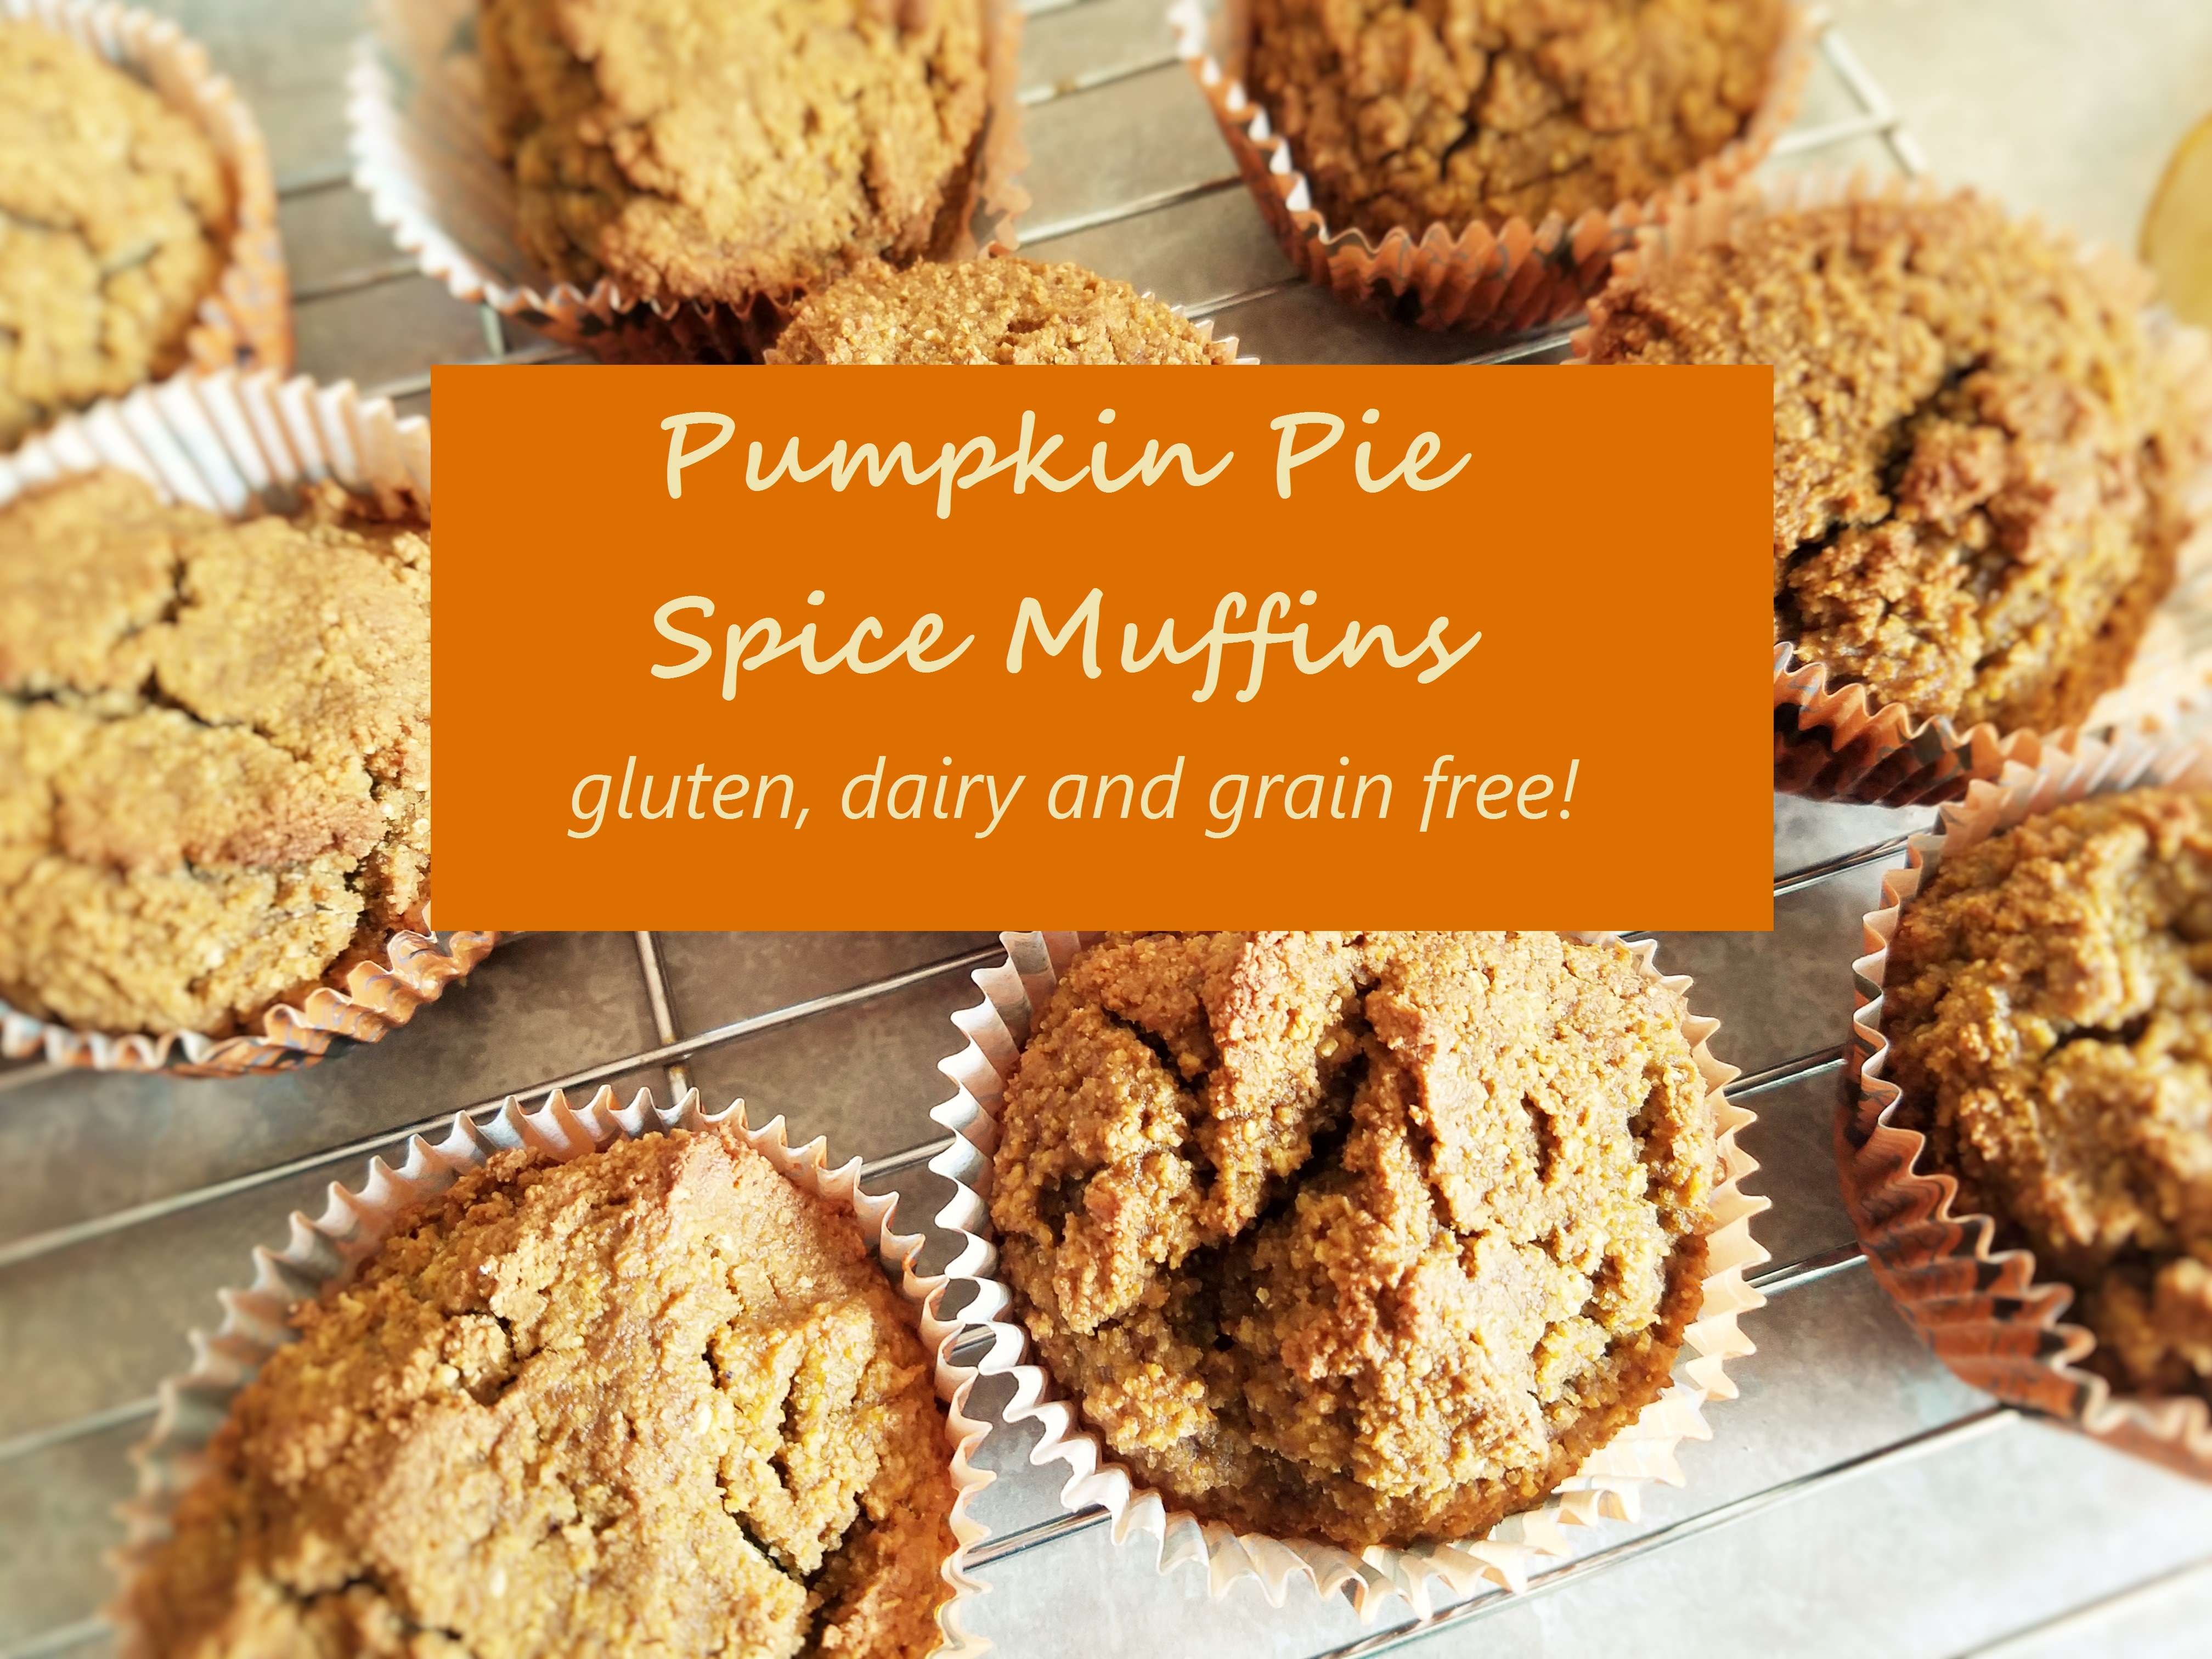 Pumpkin Pie Spice Muffins – Gluten, Dairy and Grain Free! (Freezer-friendly)